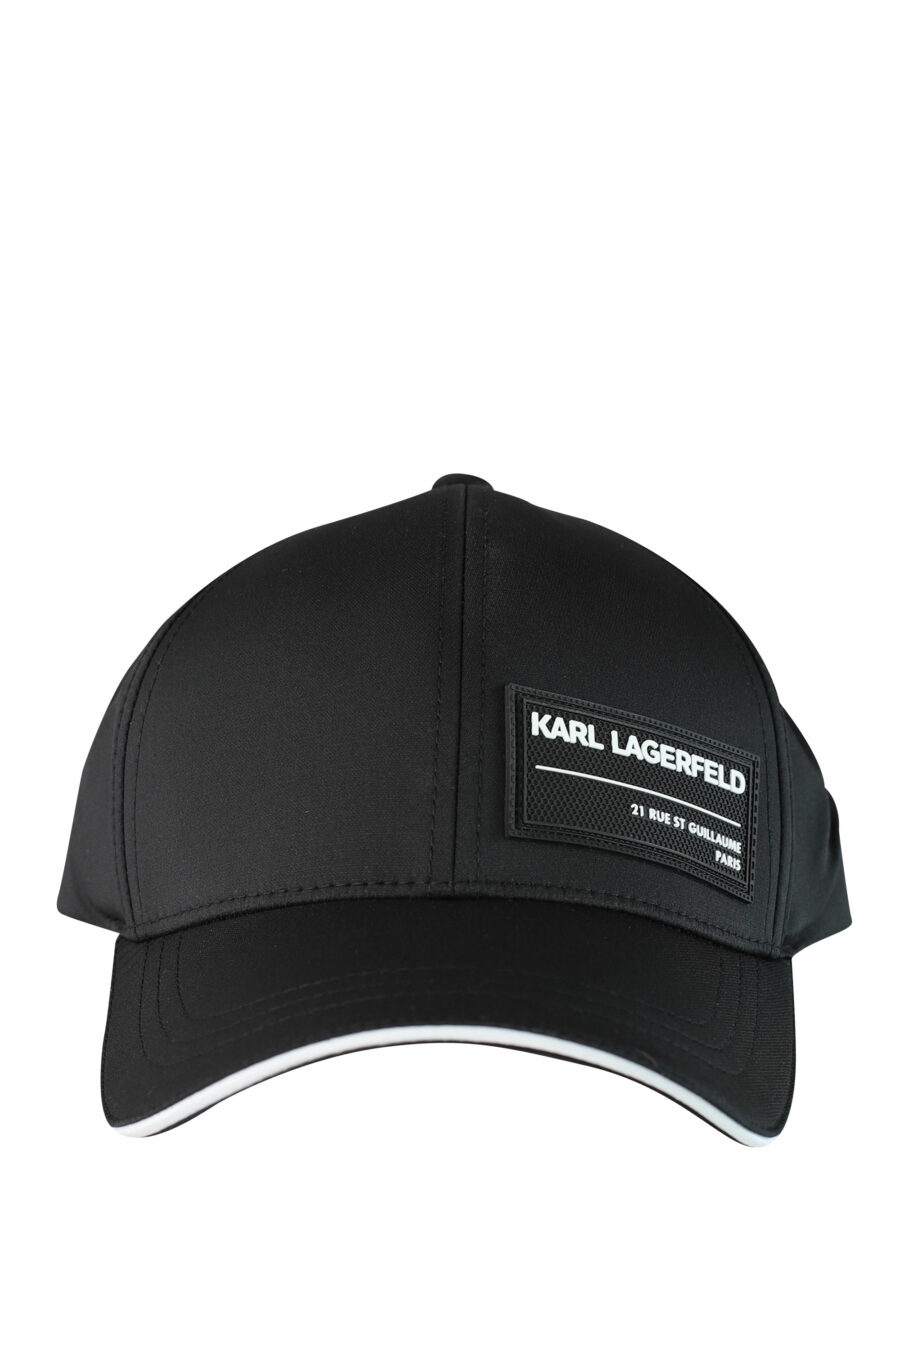 Gorra negra con logo etiqueta - IMG 1527